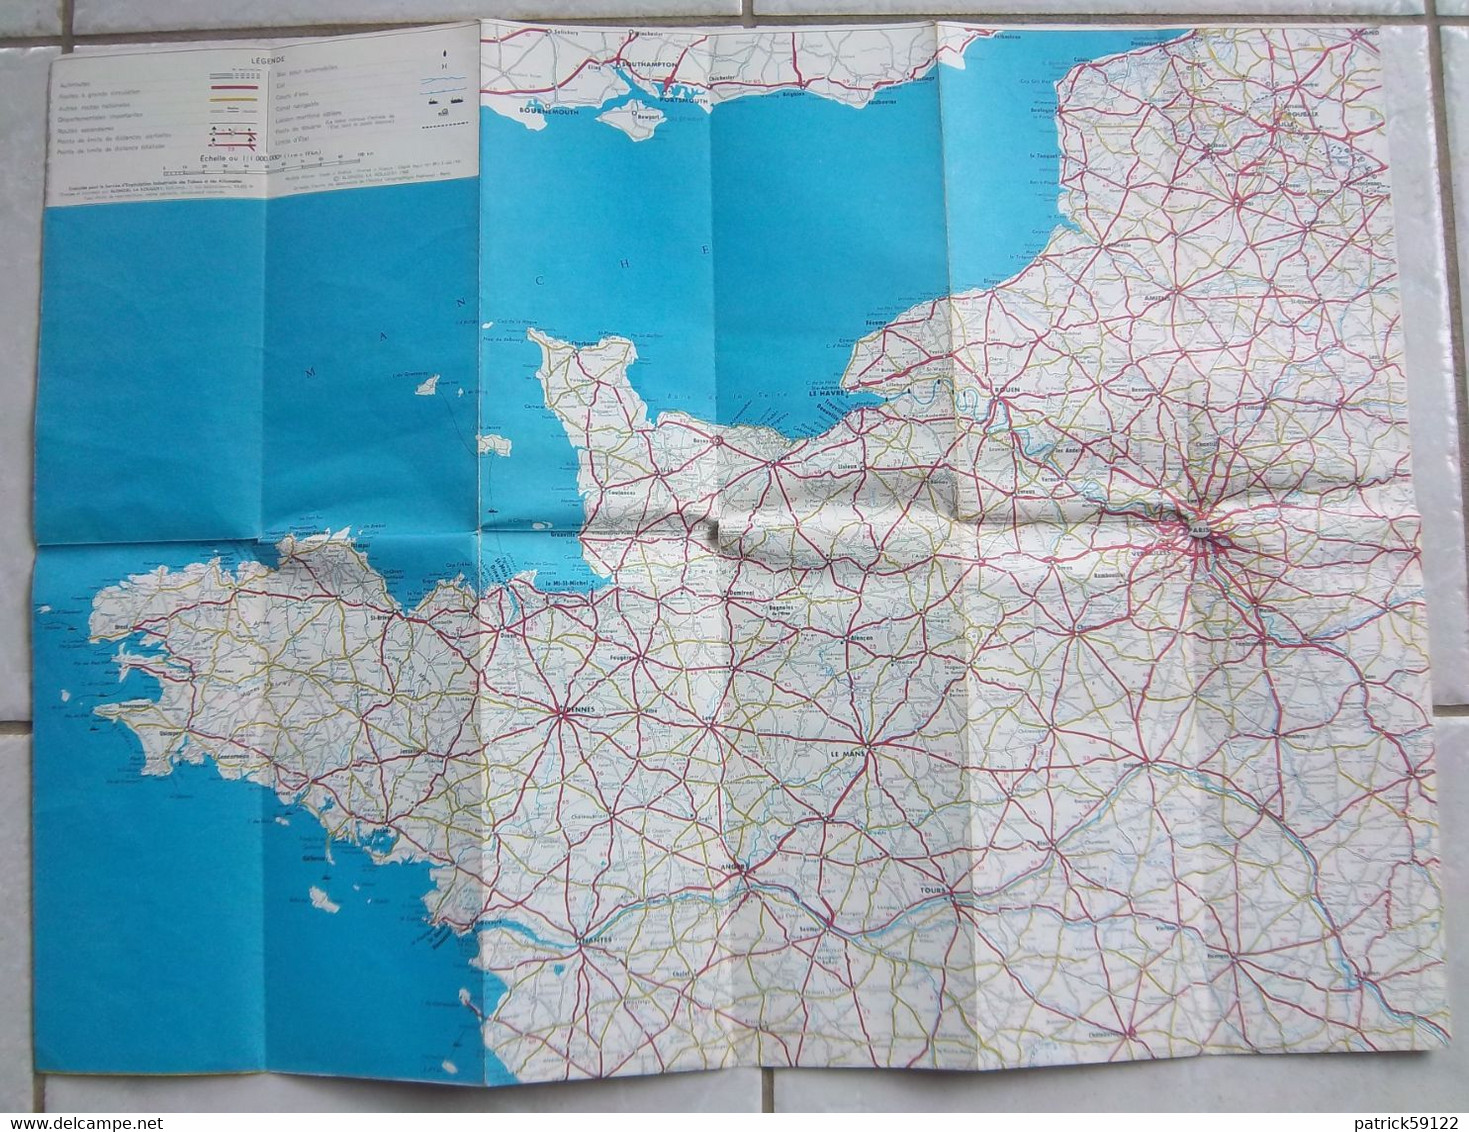 CARTE ROUTIERE REGIE FRANCAISE DES TABACS - ROUTES DE FRANCE / FRANCE OUEST - CHIQUITO / MARIGNY - BLONDEL 1960 - Roadmaps